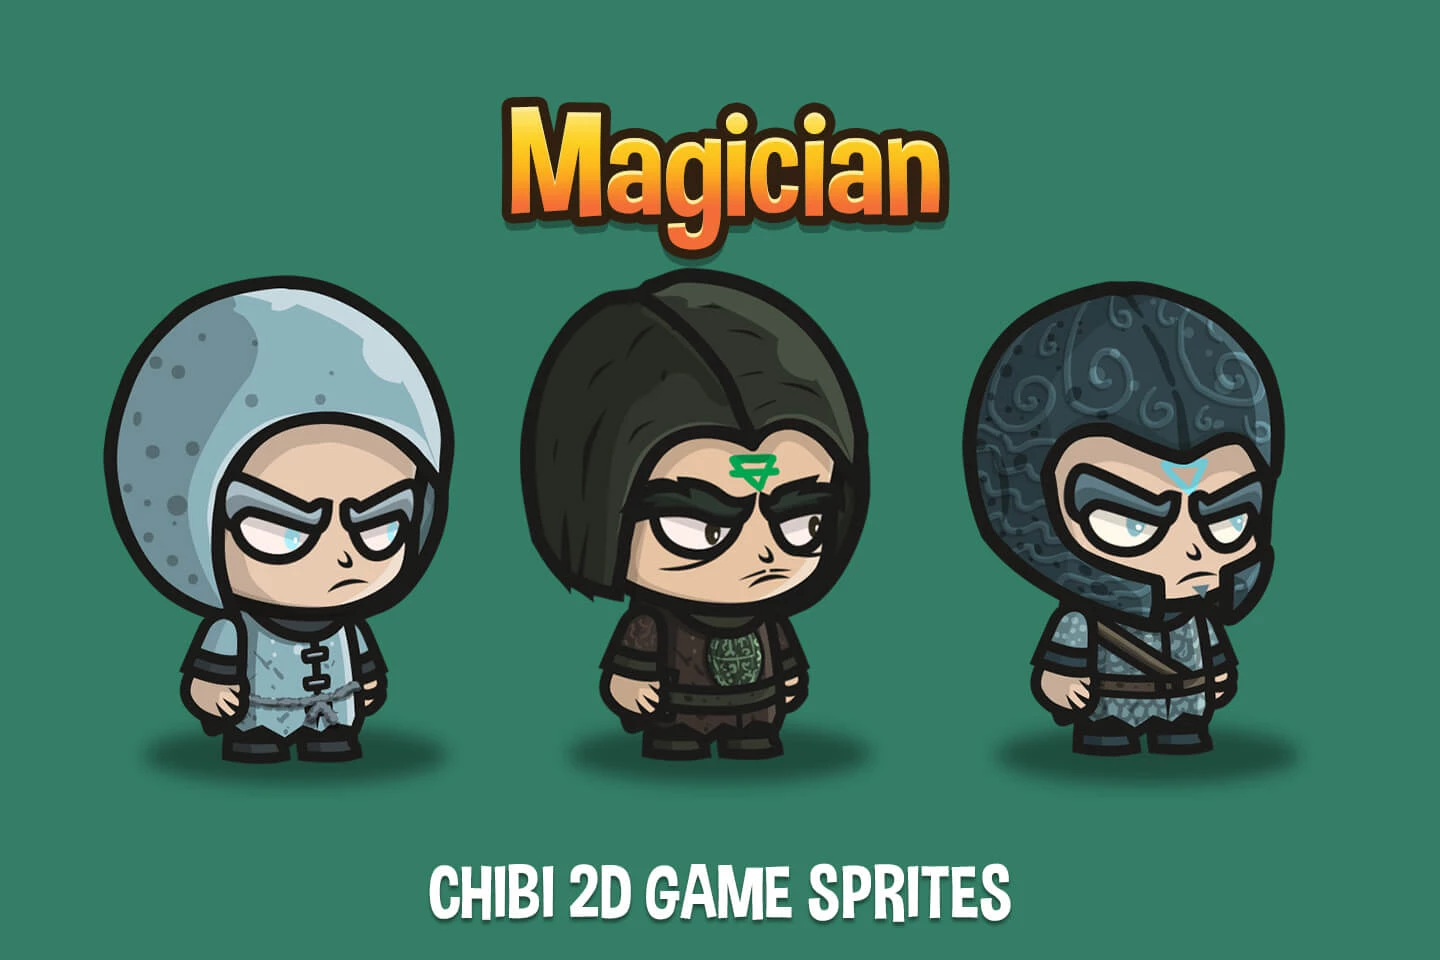 Magician Chibi 2D Game Sprites